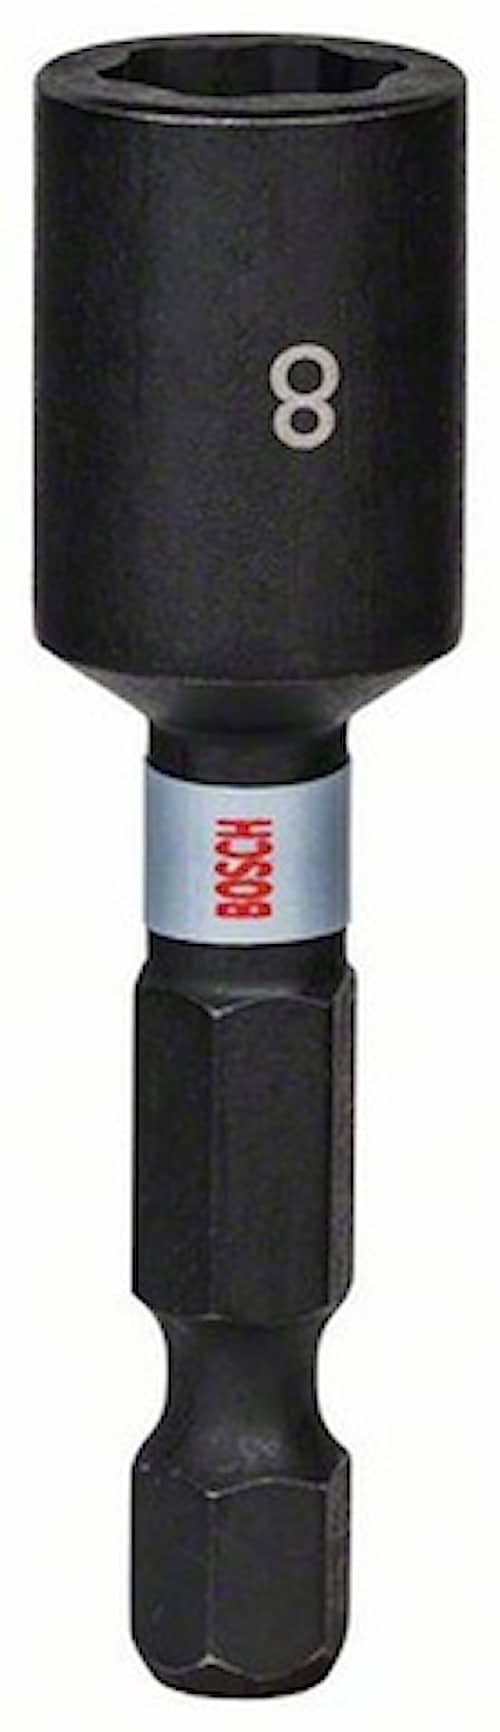 Bosch Impact Control topnøgle, 1 del